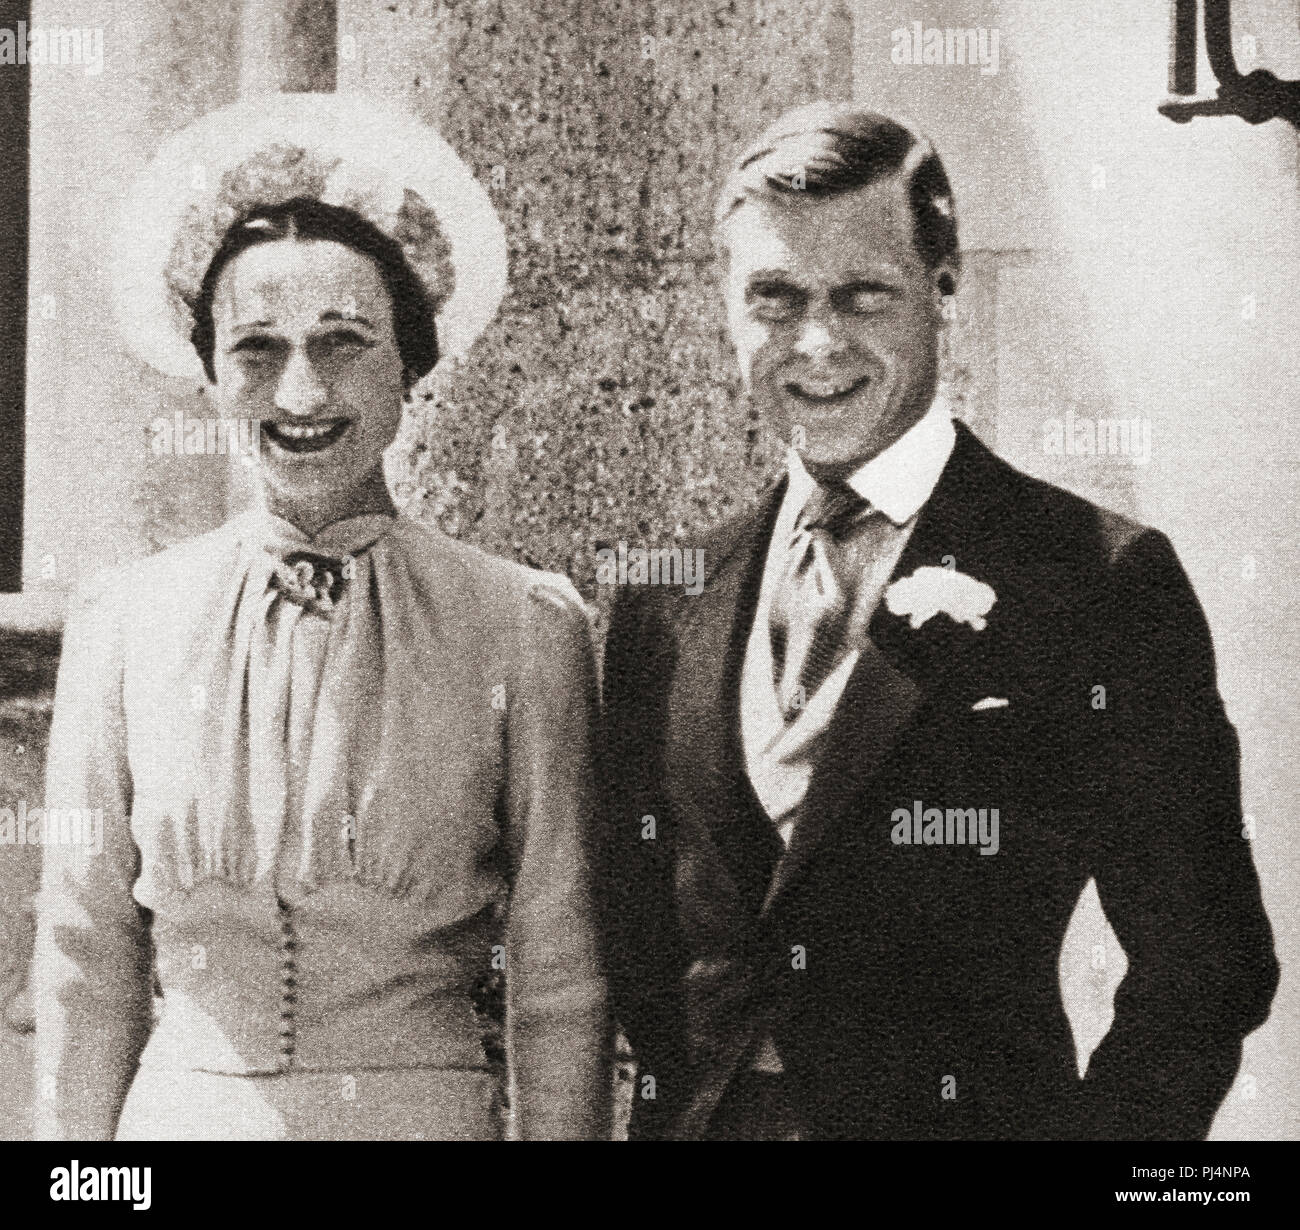 Le duc et la duchesse de Windsor, vu ici après leur mariage en 1937. Edward, duc de Windsor, ex-roi Édouard VIII, 1894 - 1972. Wallis Simpson, duchesse de Windsor, née Bessie Wallis Warfield, 1896 - 1986. Socialite américaine. À partir de ces années, publié en 1938. Banque D'Images